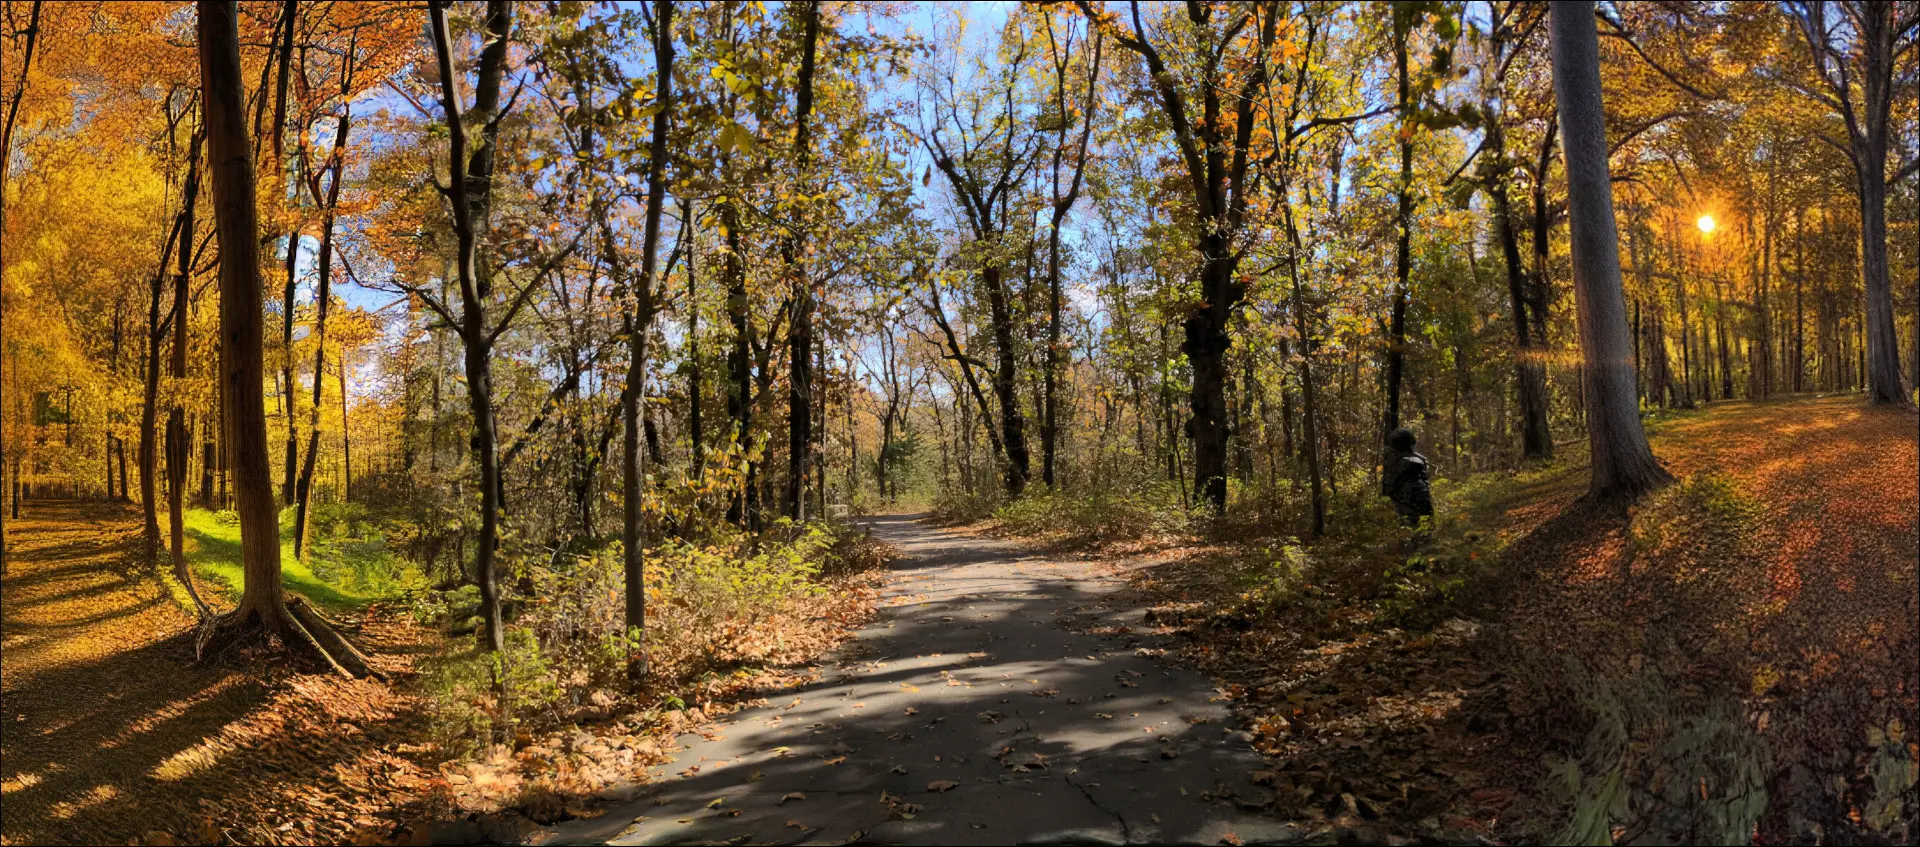 Powiększone zdjęcie ścieżki spacerowej jesienią z lewą i prawą stroną, wygenerowane przy użyciu funkcji Stable Diffusion.